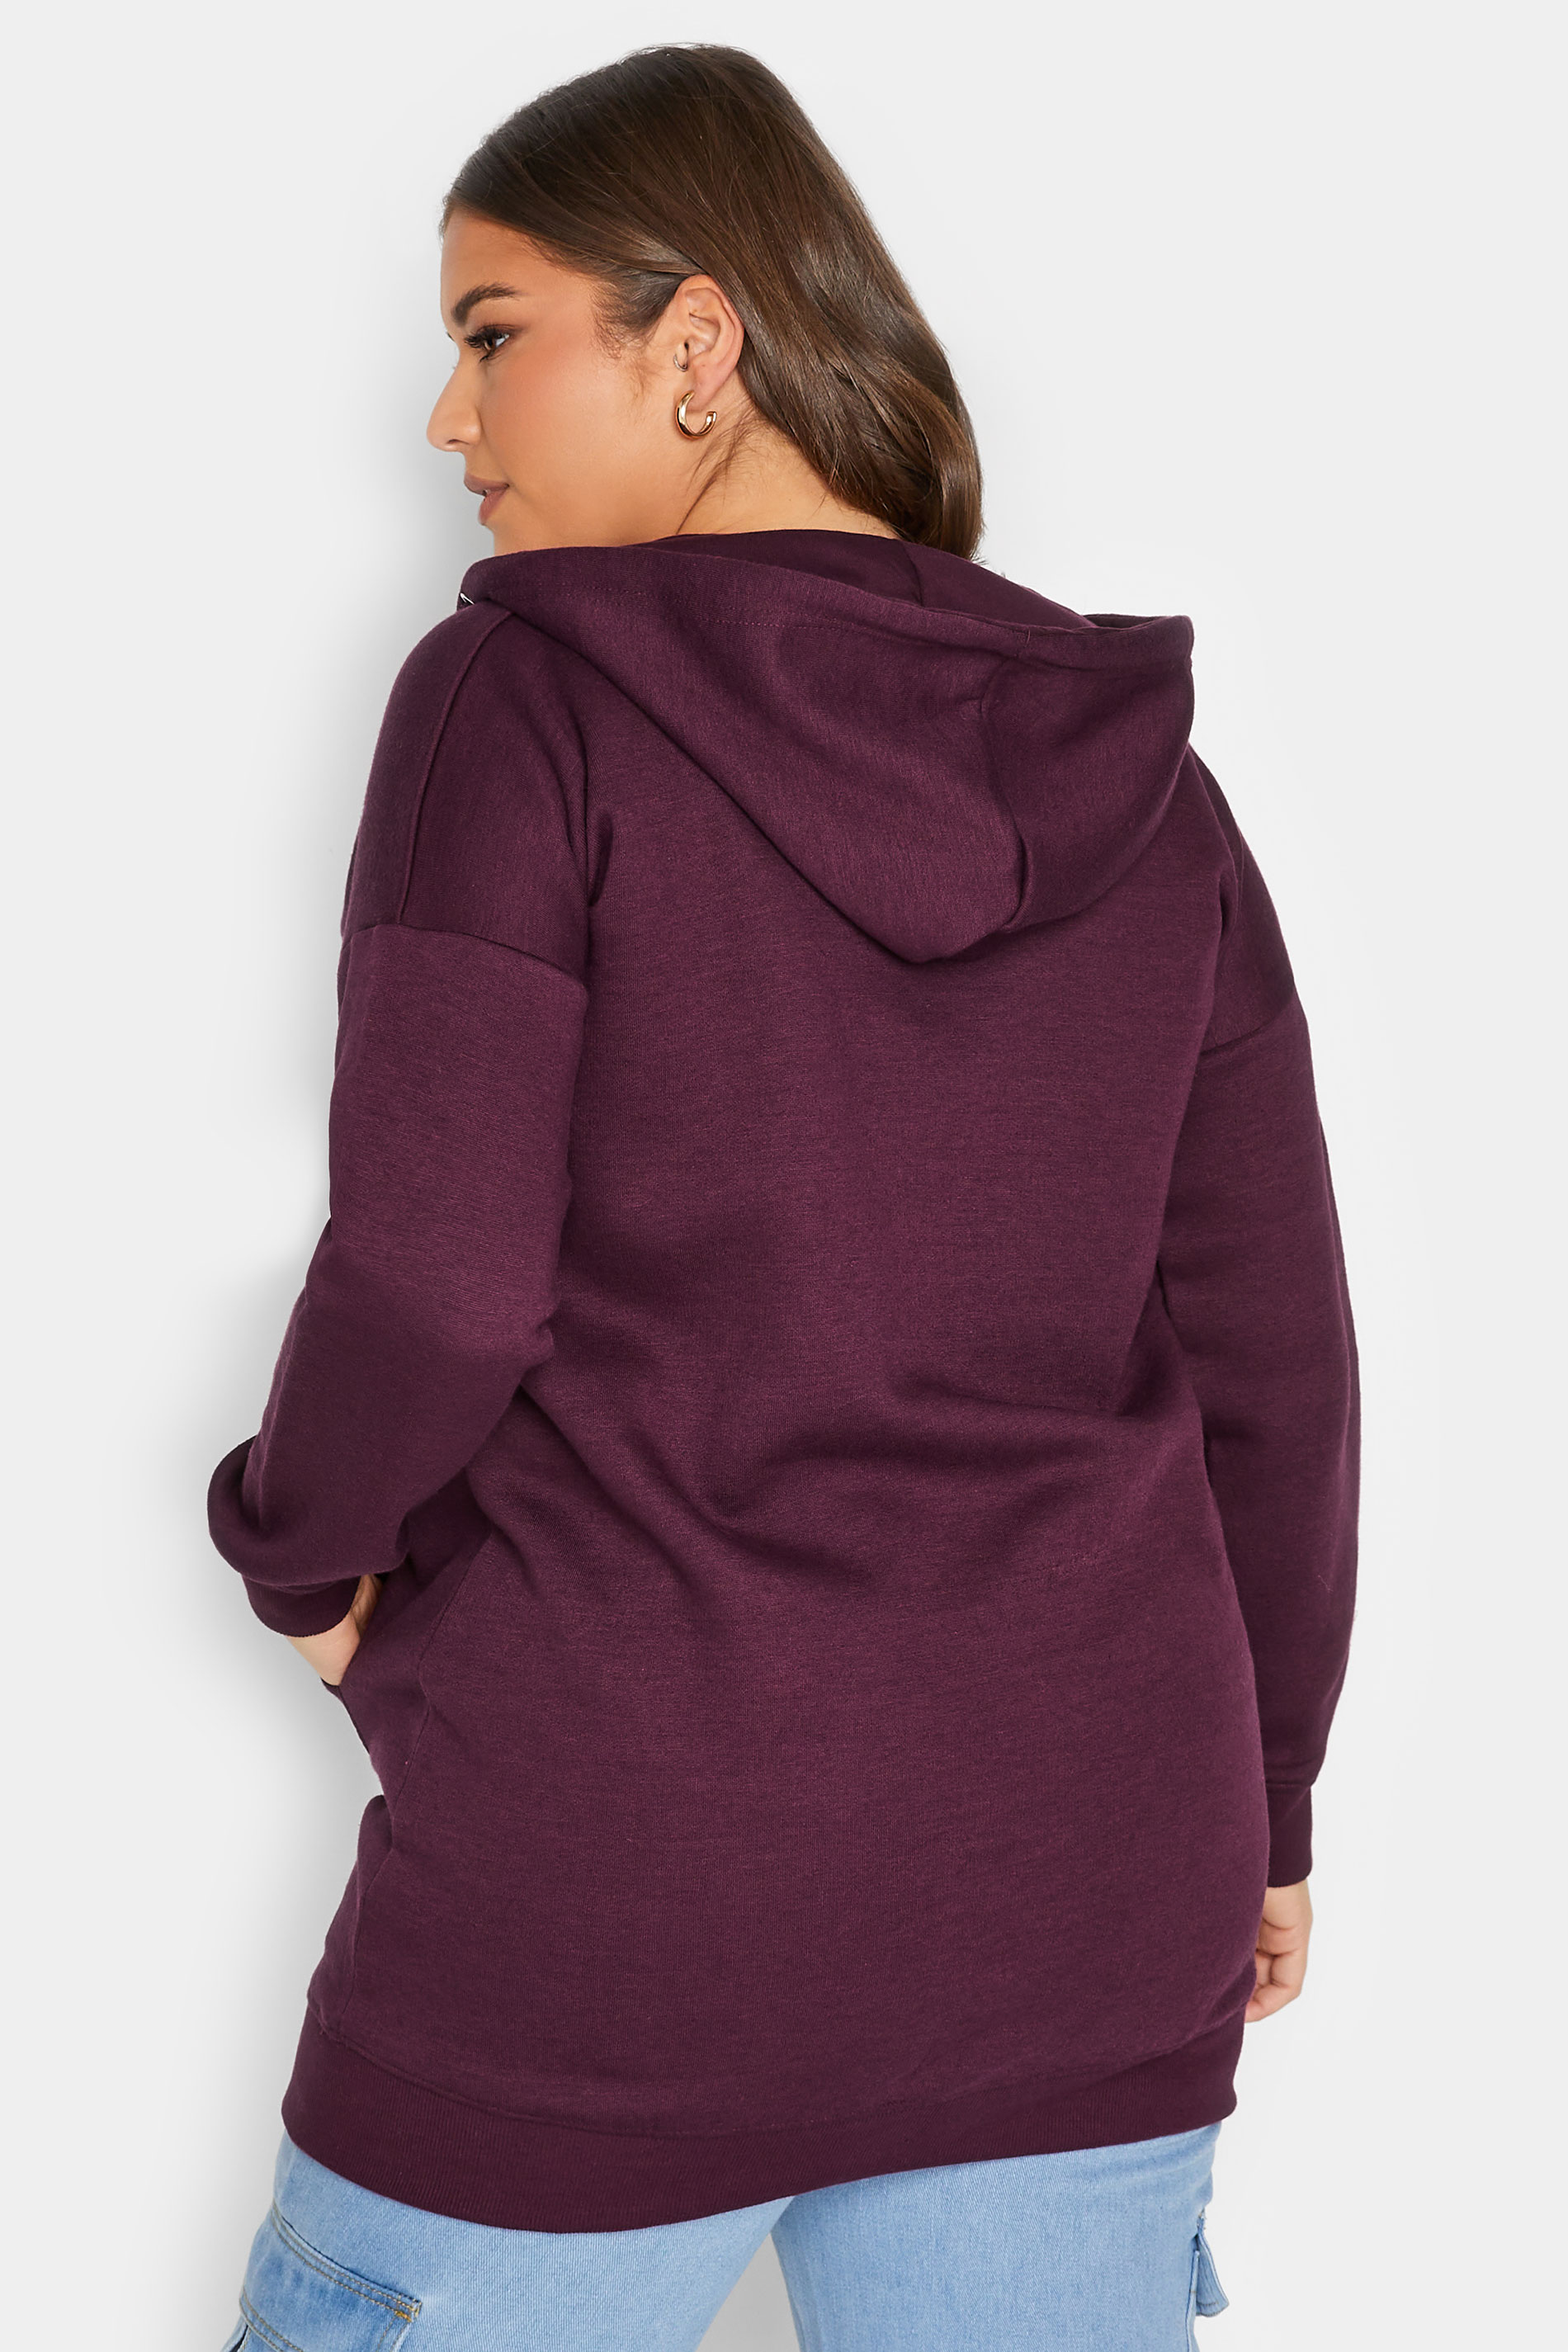 Curve Plus Size Womens Dark Purple Raglan Zip Hoodie | Yours Clothing 3